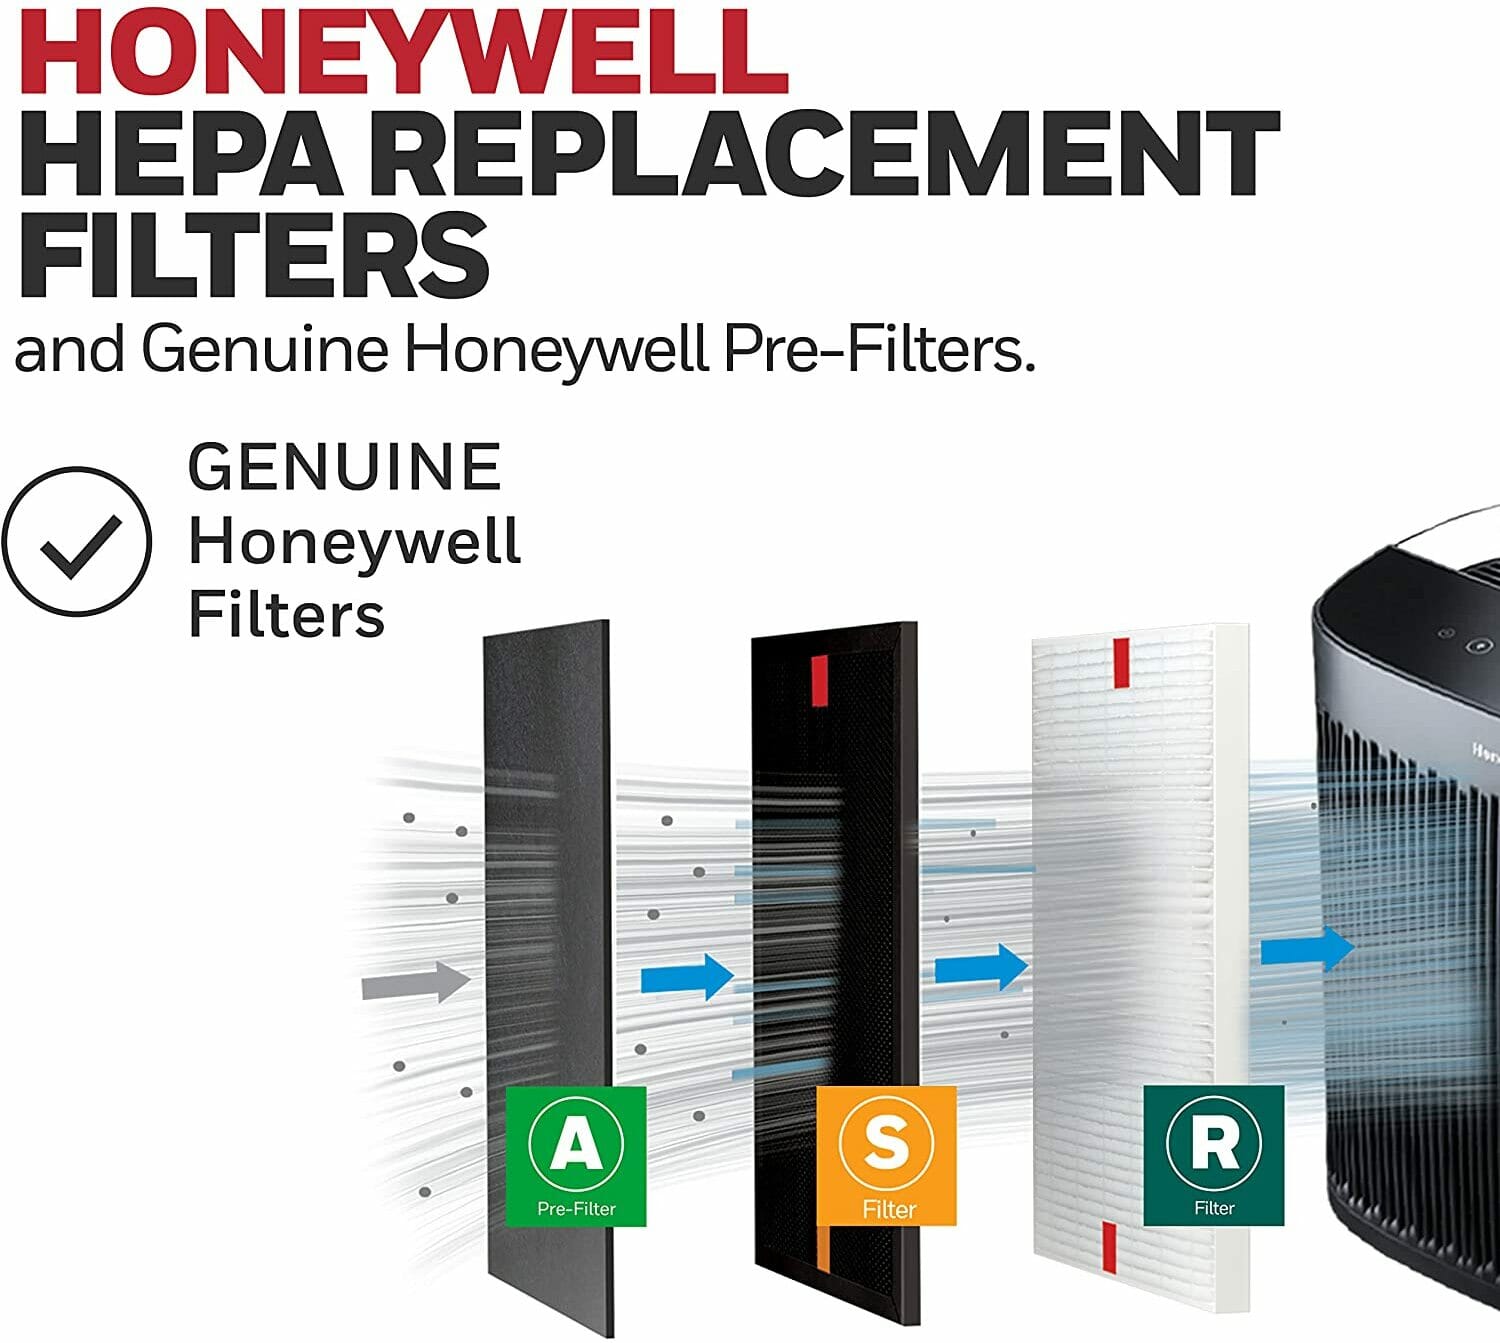 Honeywell Air Purifier Filter Replacement